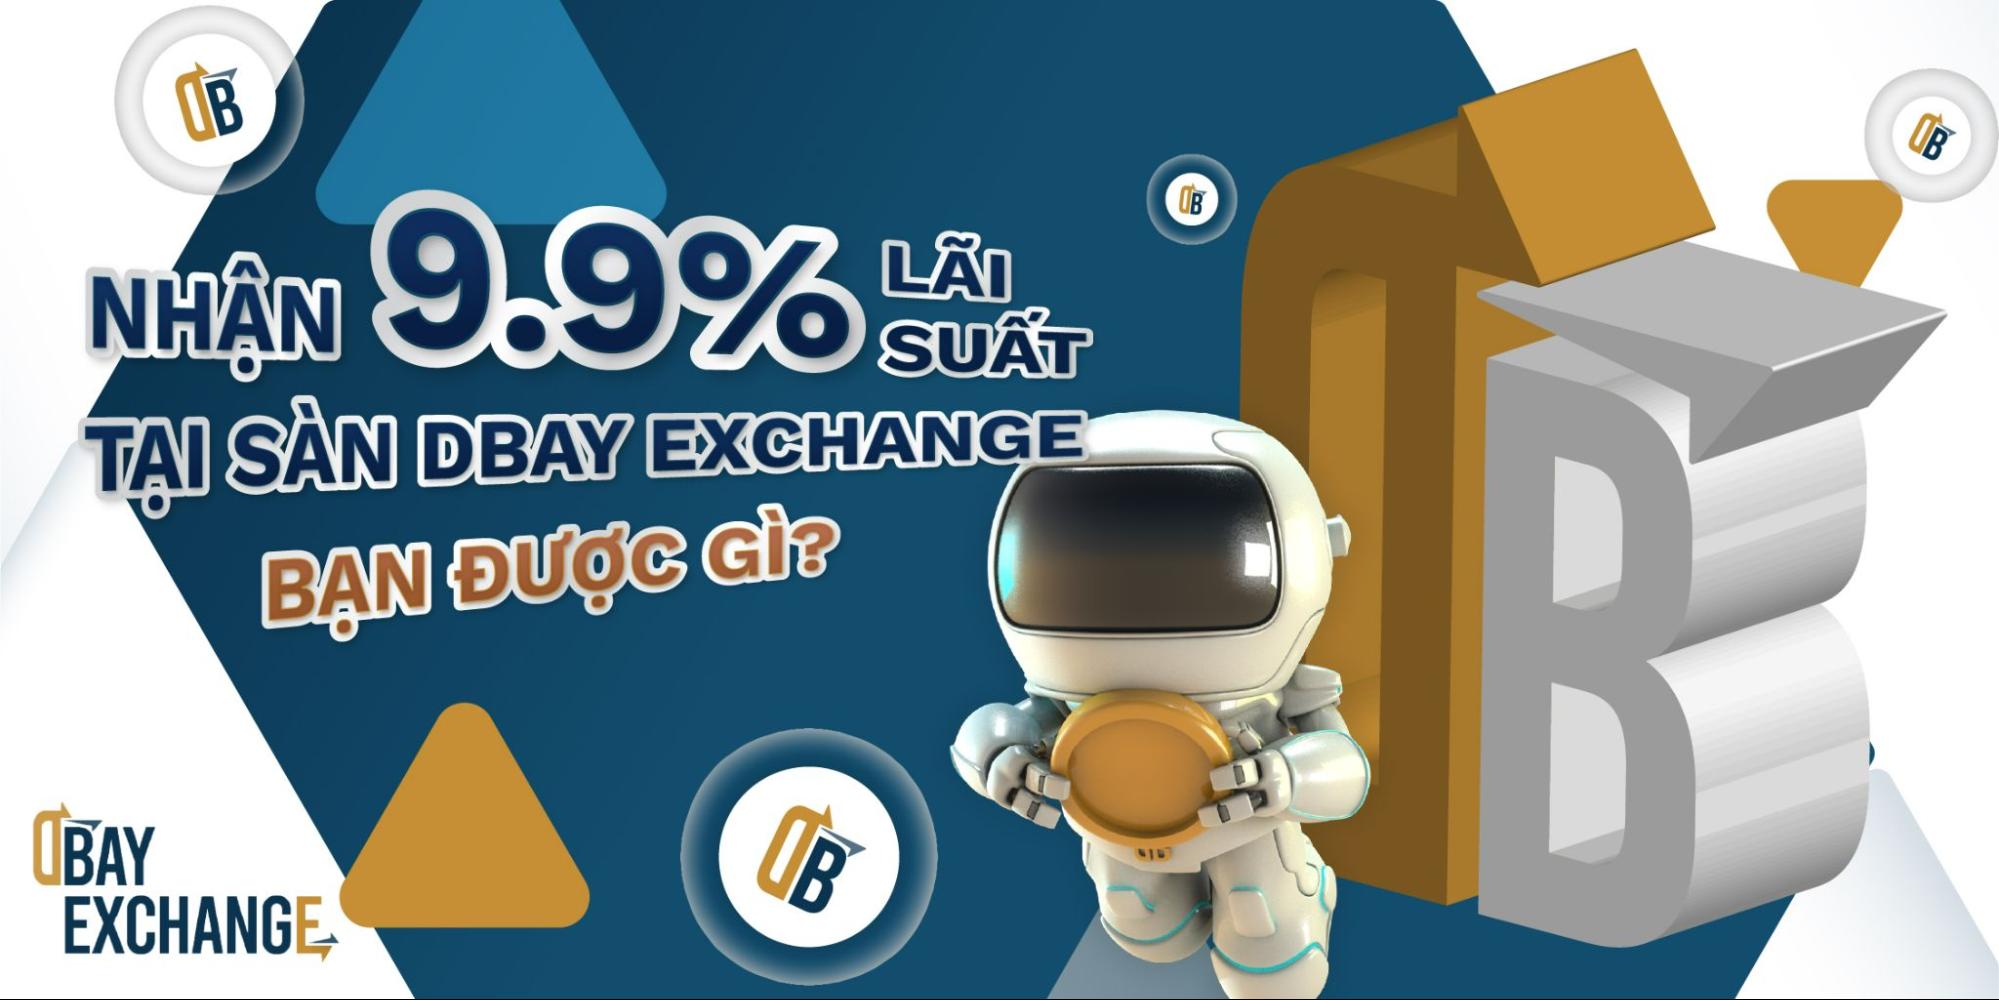 Nhận 9.9% lãi suất tại sàn DBay Exchange - Bạn được gì?